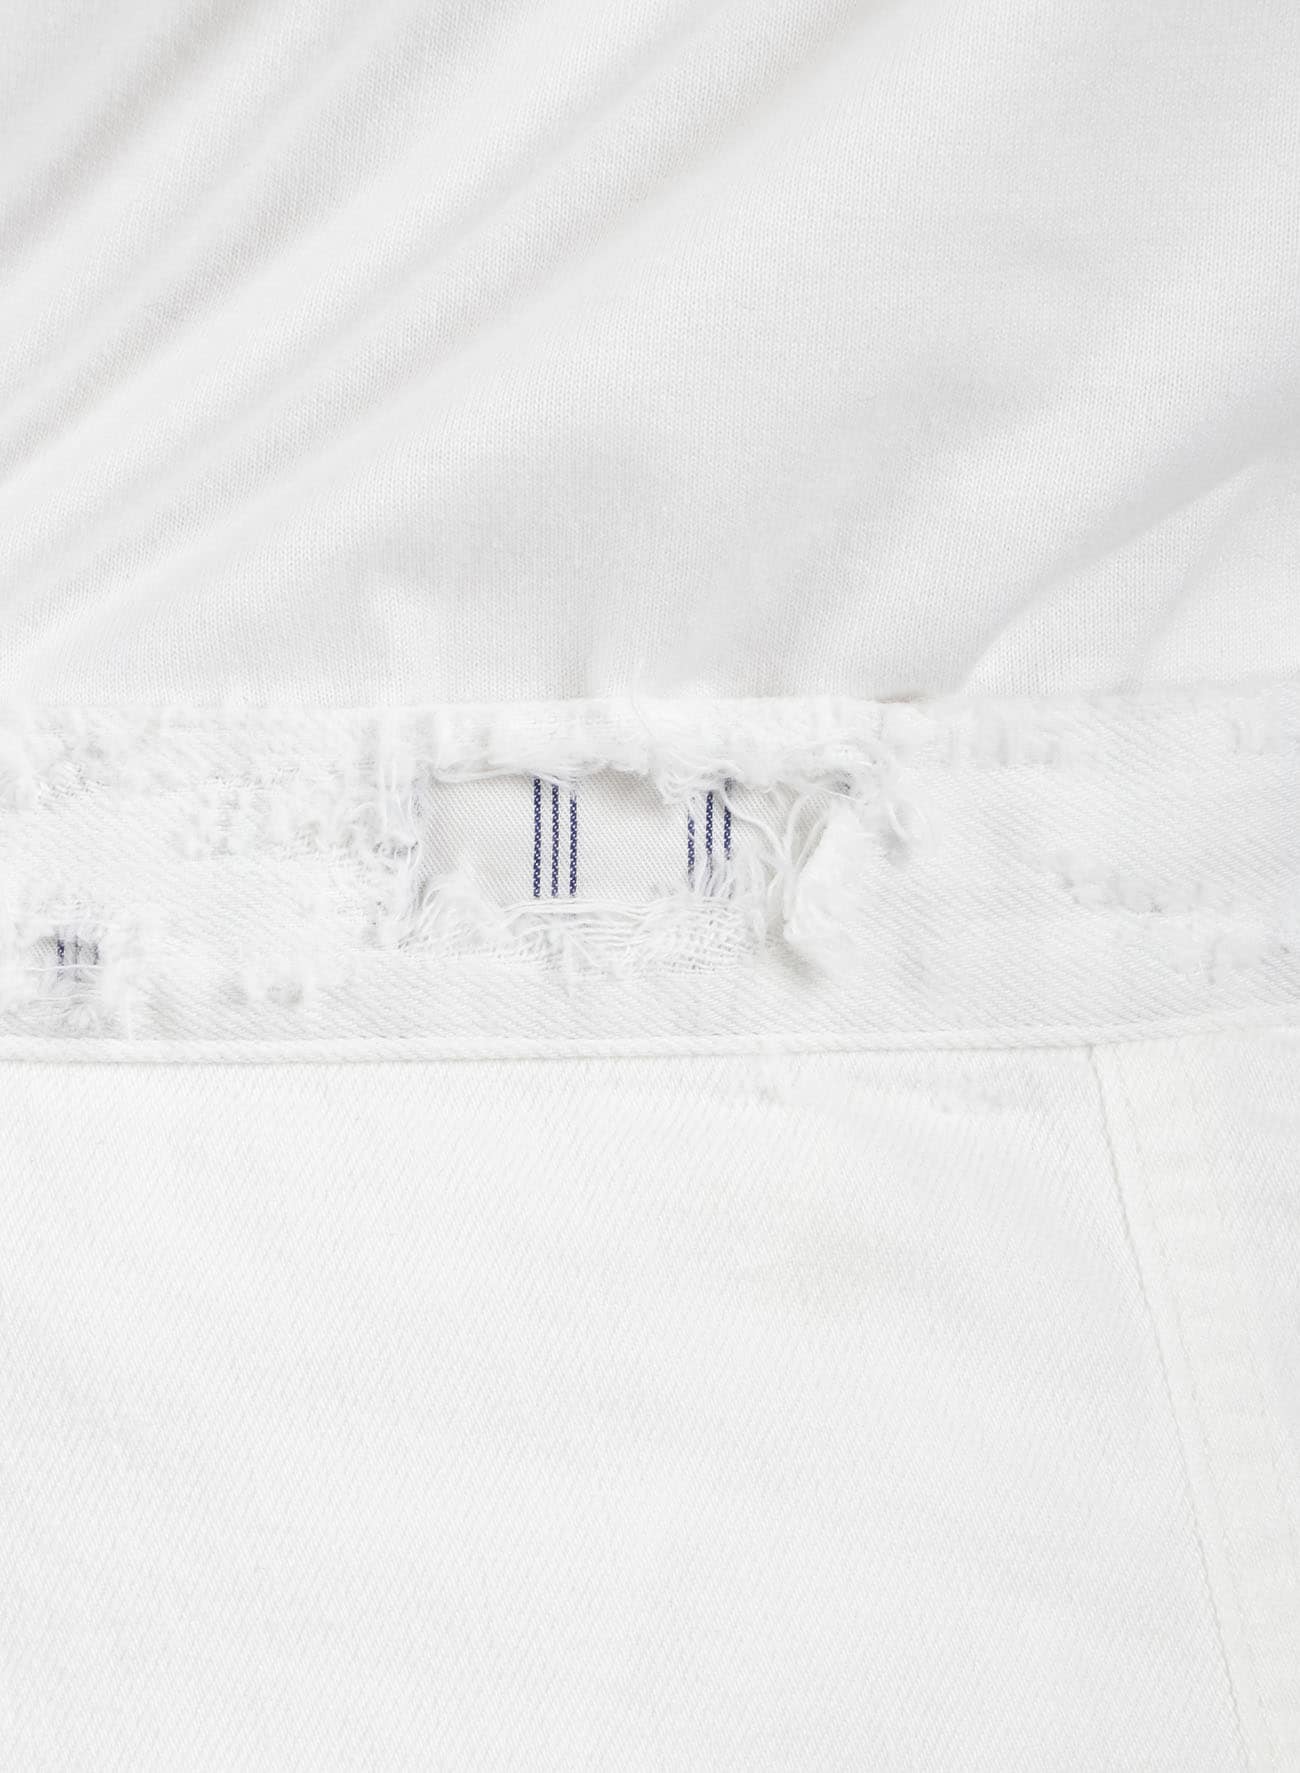 8oz DENIM BIO WASH 5BUTTON SAROUEL PANTS(XS White): Vintage｜THE